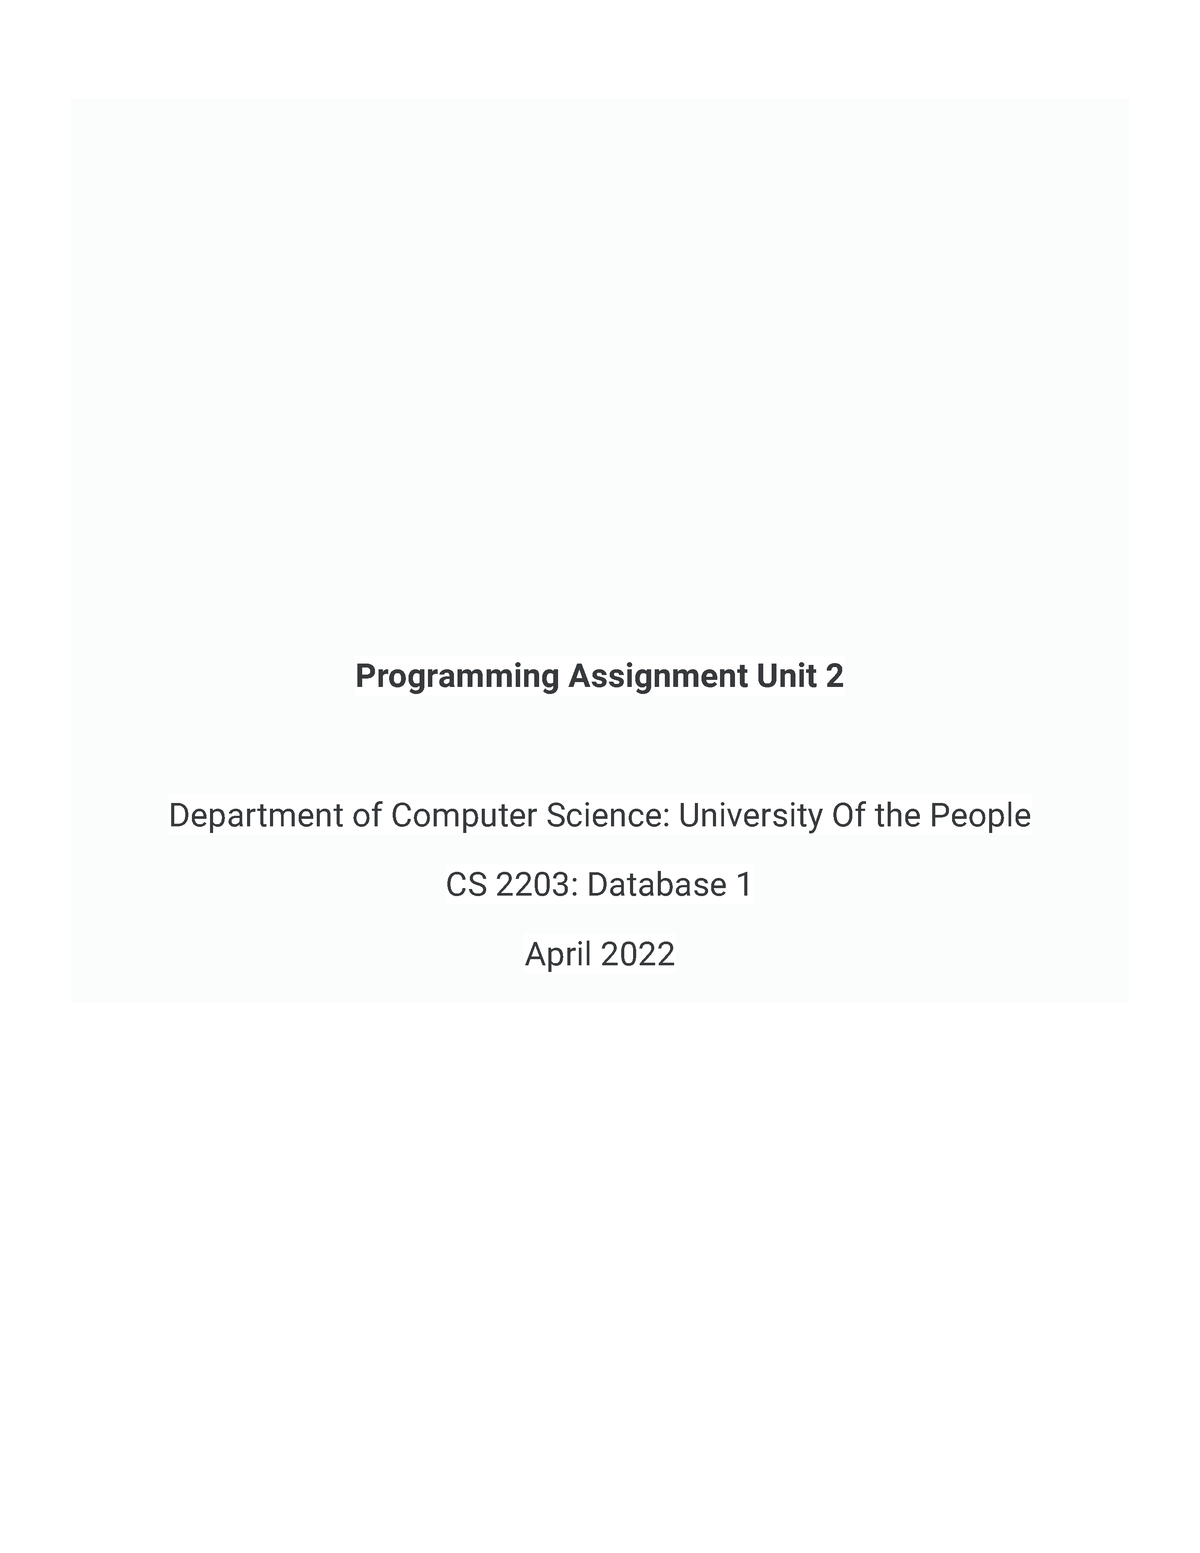 cs 2203 programming assignment unit 2